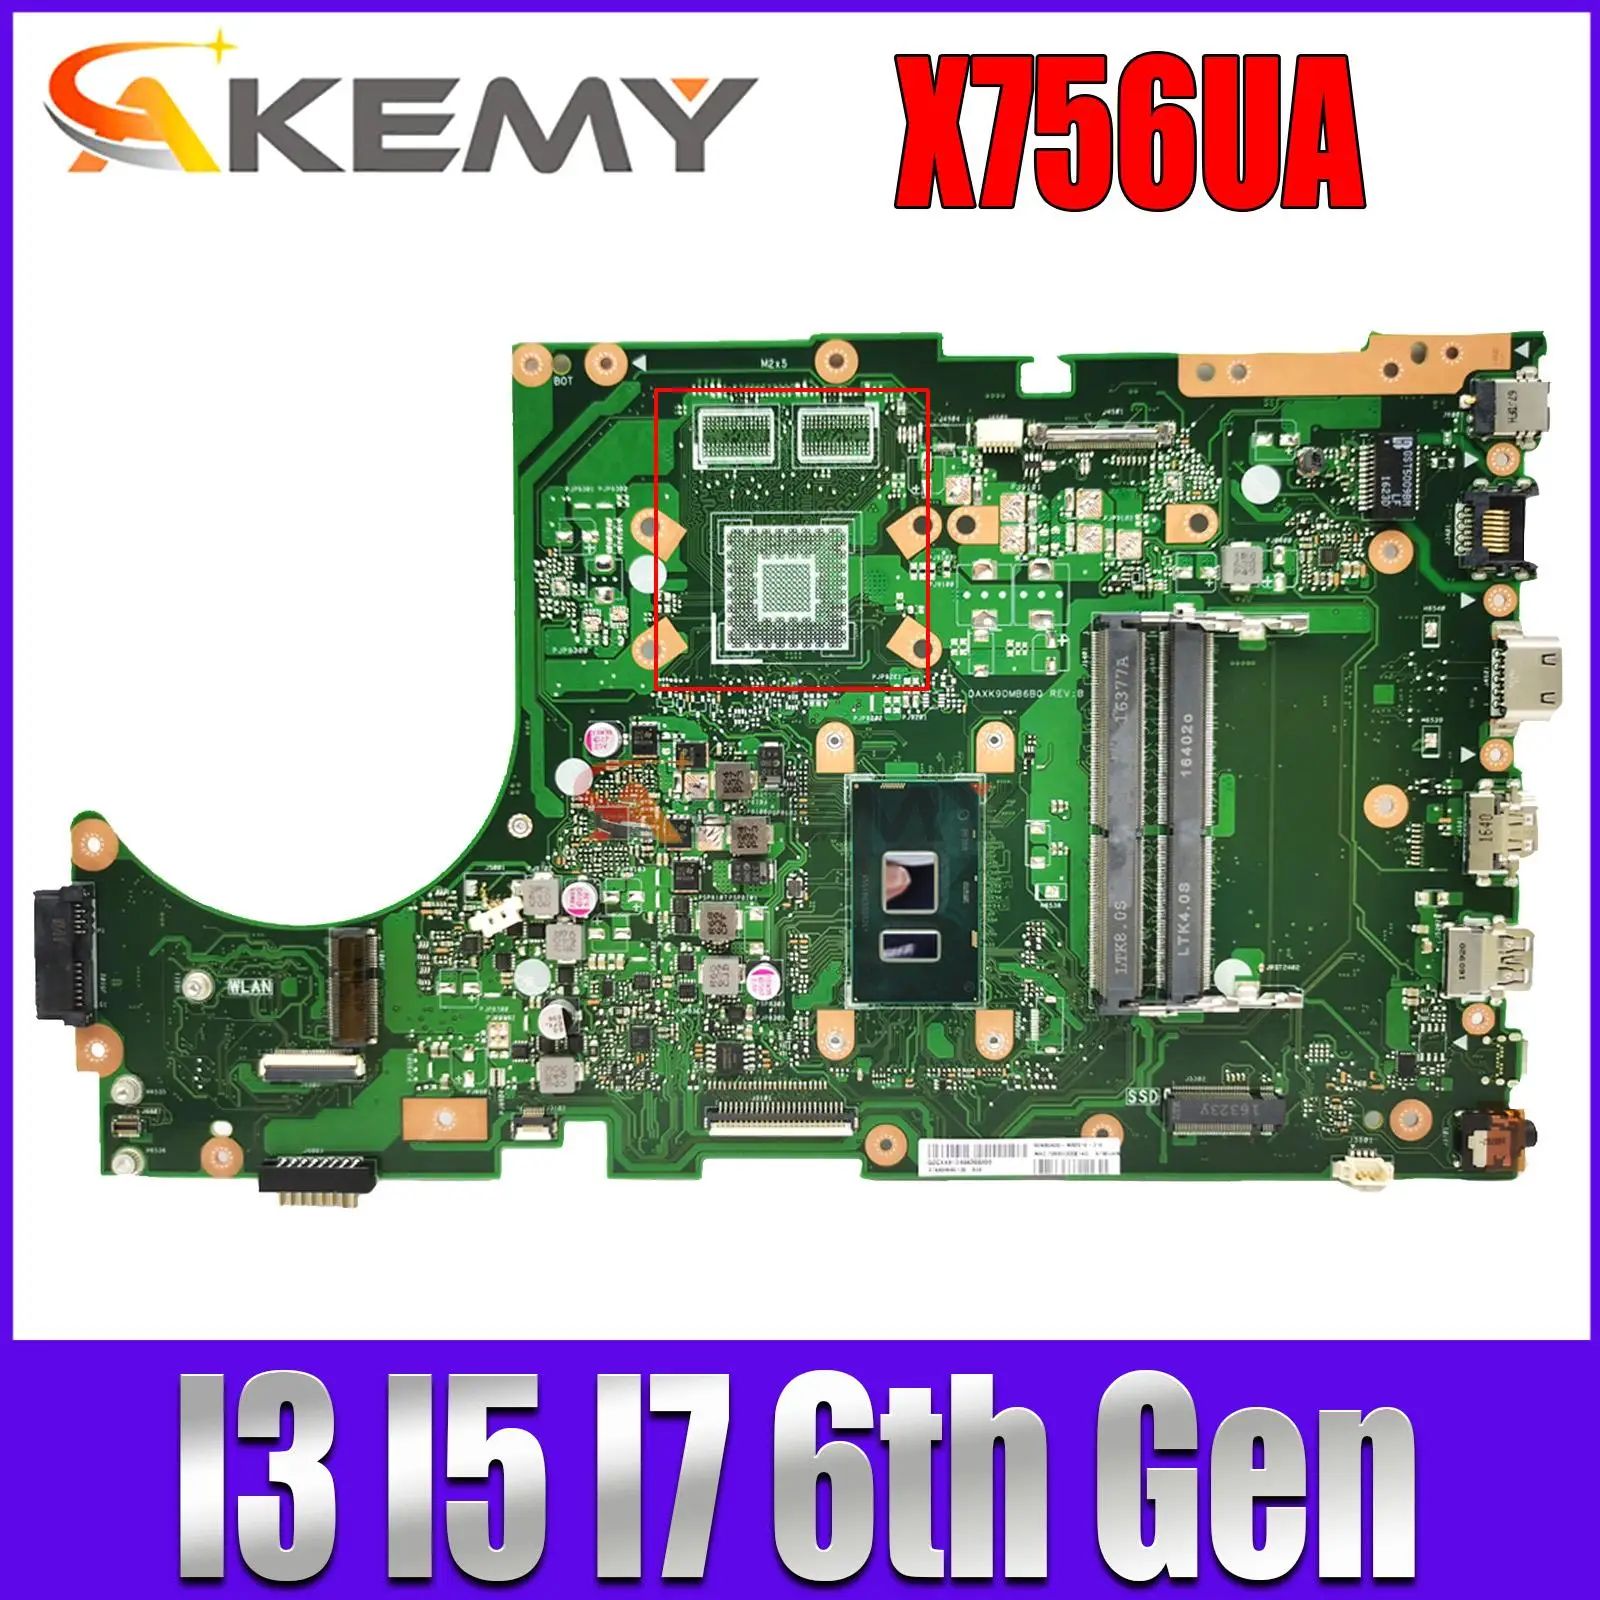 

K756UV Motherboard For Asus X756UV X756UAK X756UA X756UJ X756UXM X756UQK X756UW W/I3 I5 I7 CPU DDR4/DDR3 100% Test OK